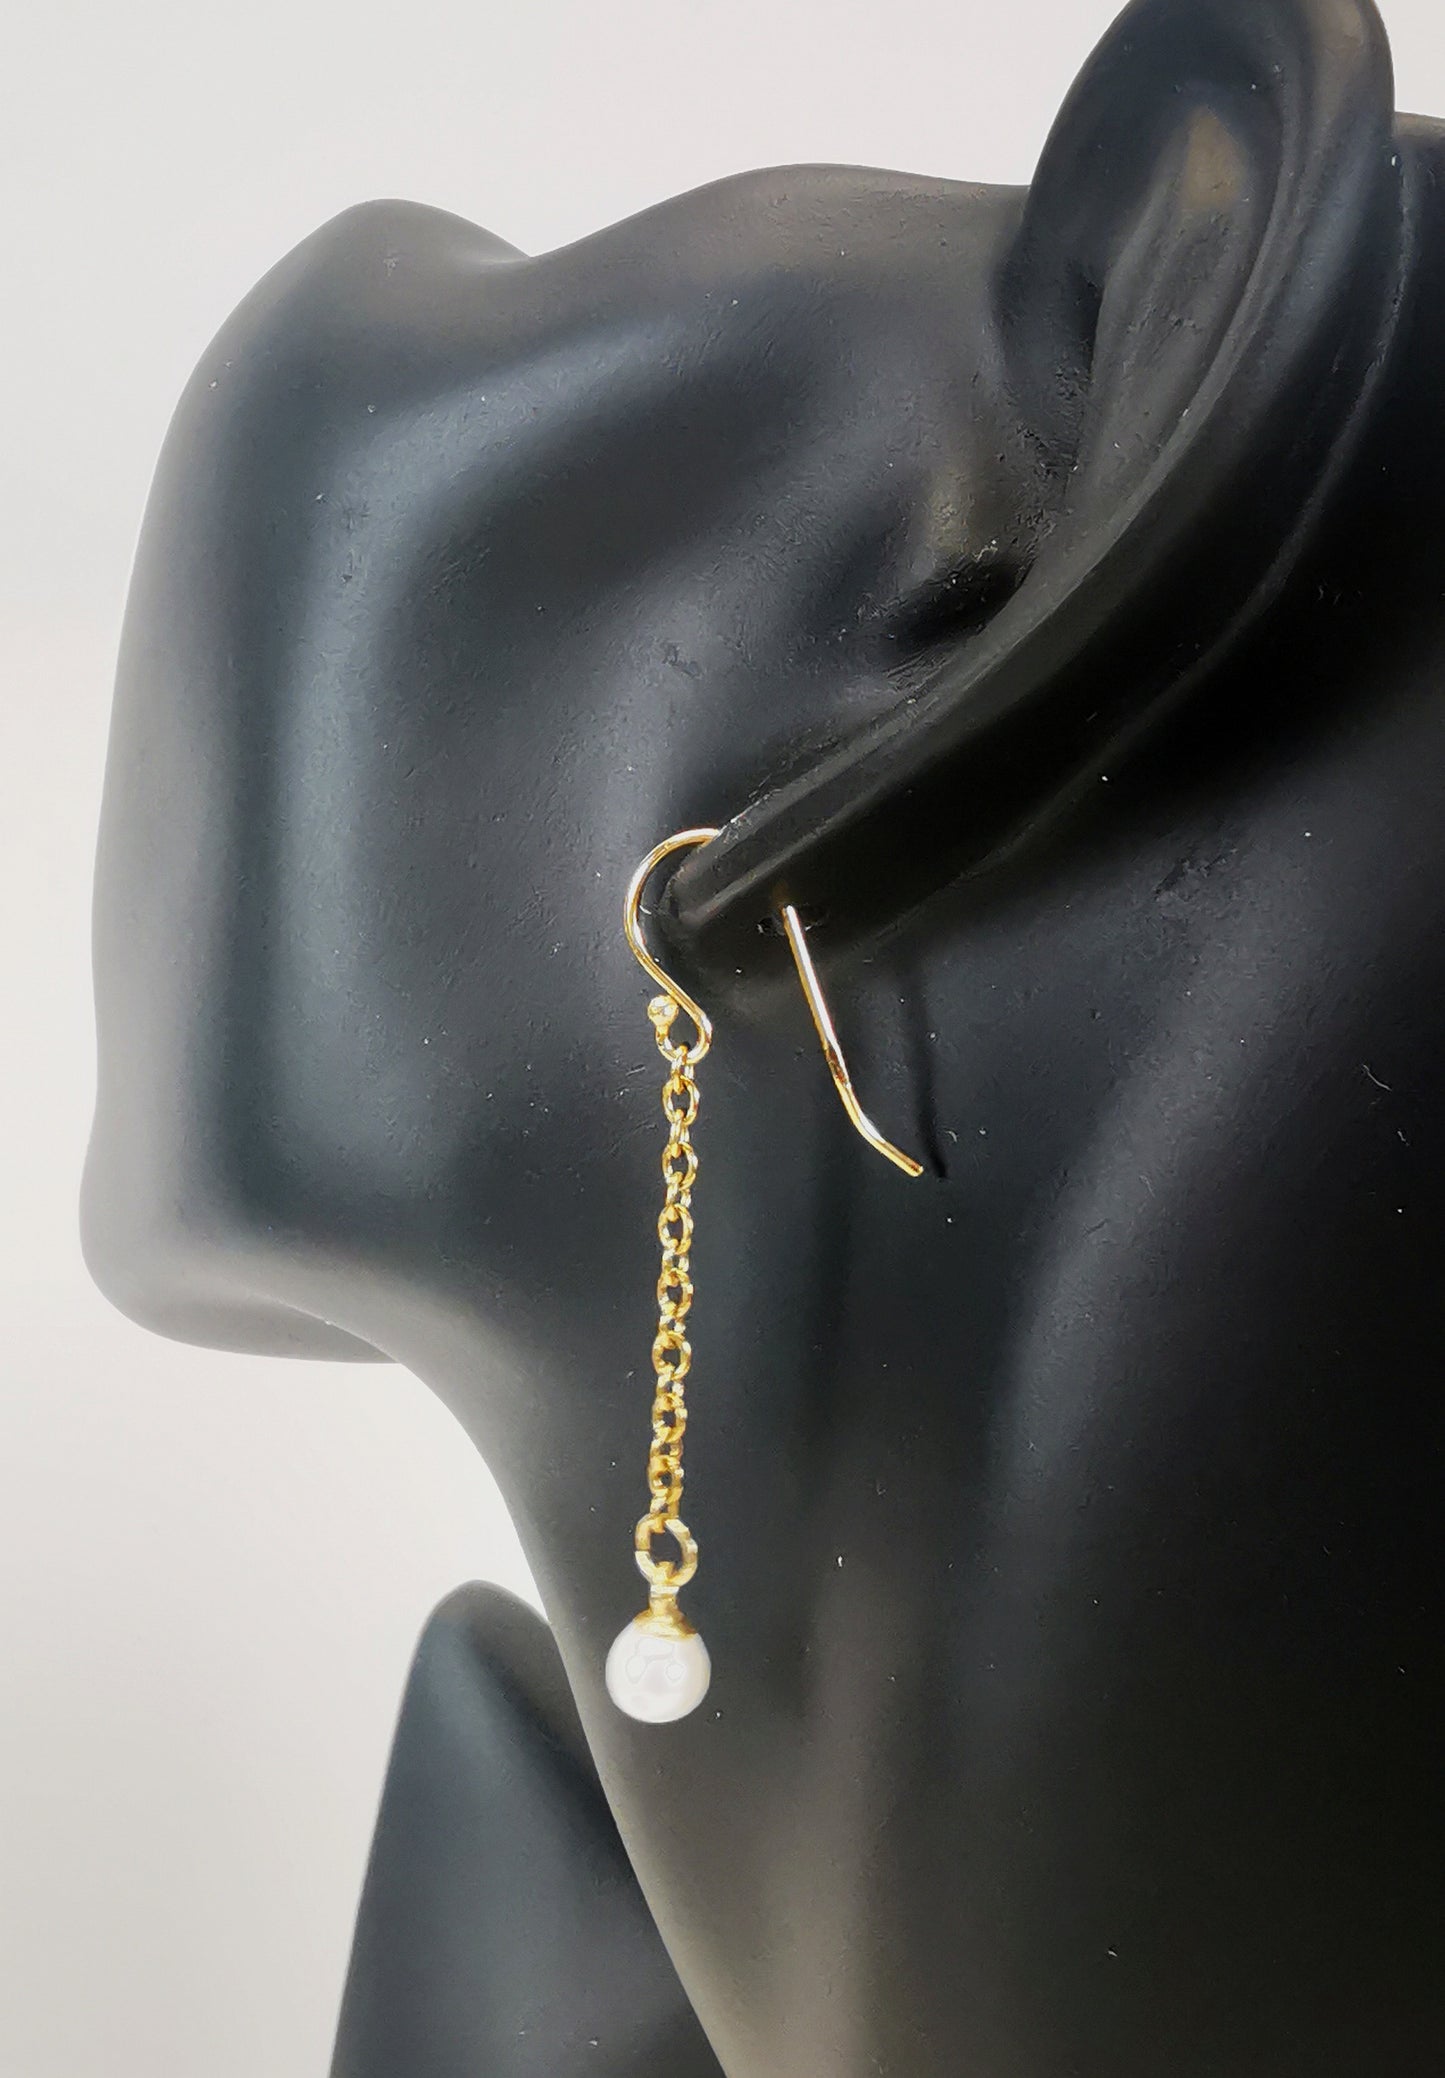 Boucles d'oreilles perles de culture blanches rondes 5mm sur pendants et chaînes plaqués or. Représentées par une boucle accrochée à une oreille de mannequin buste noir. Vue de trois quarts arrière.